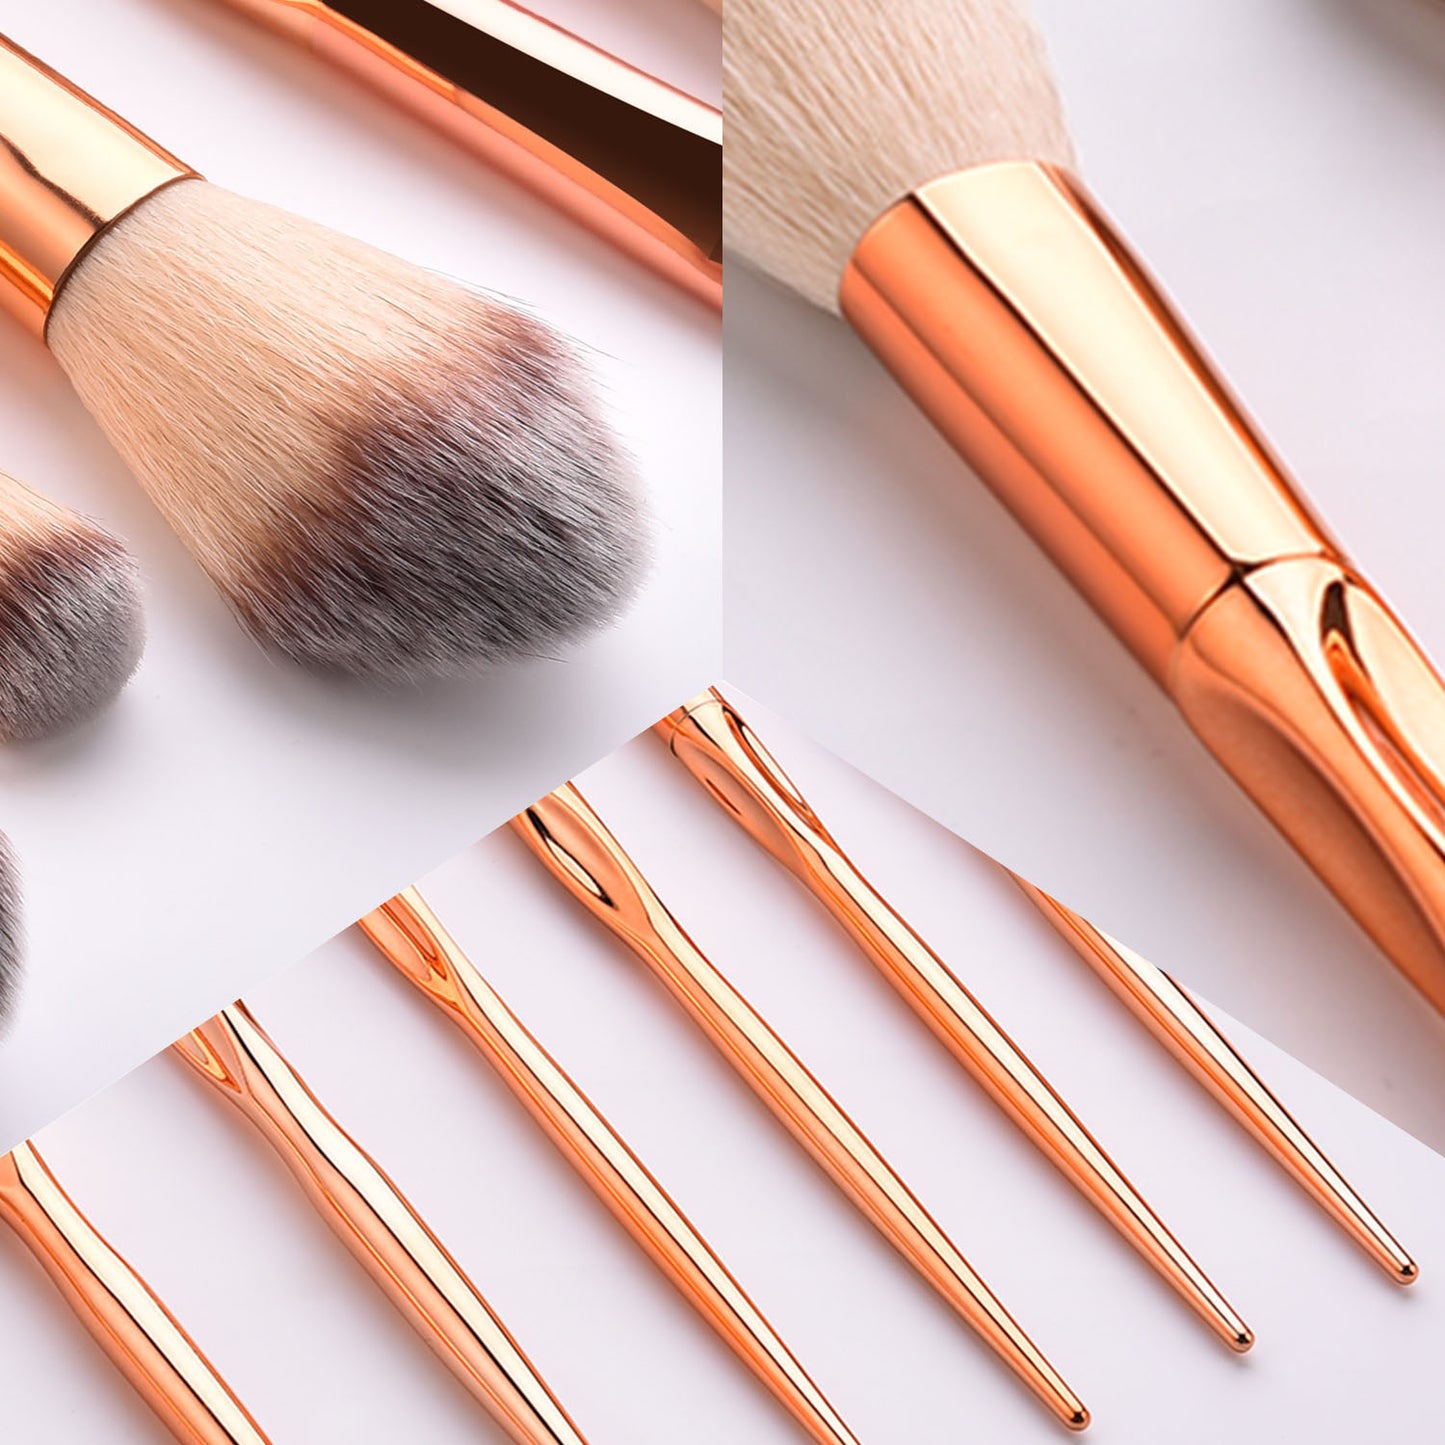 8 Makeup Brush Sets